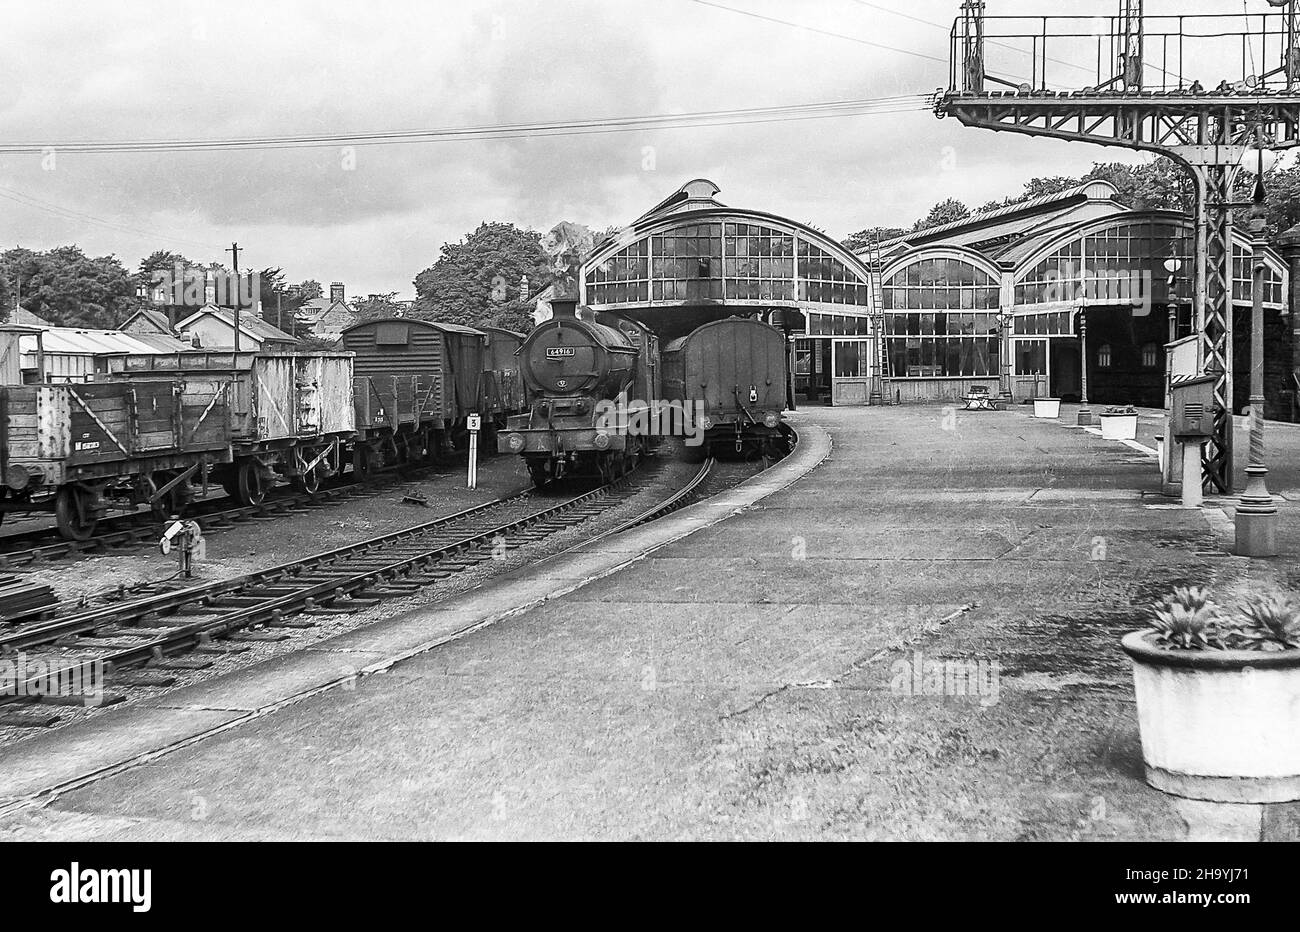 L'immagine da un negativo monocromatico scansionato è della stazione ferroviaria di Alnwick nel Northumberland come era nel luglio 1957 con il treno a vapore 64916 in posizione inattiva Foto Stock